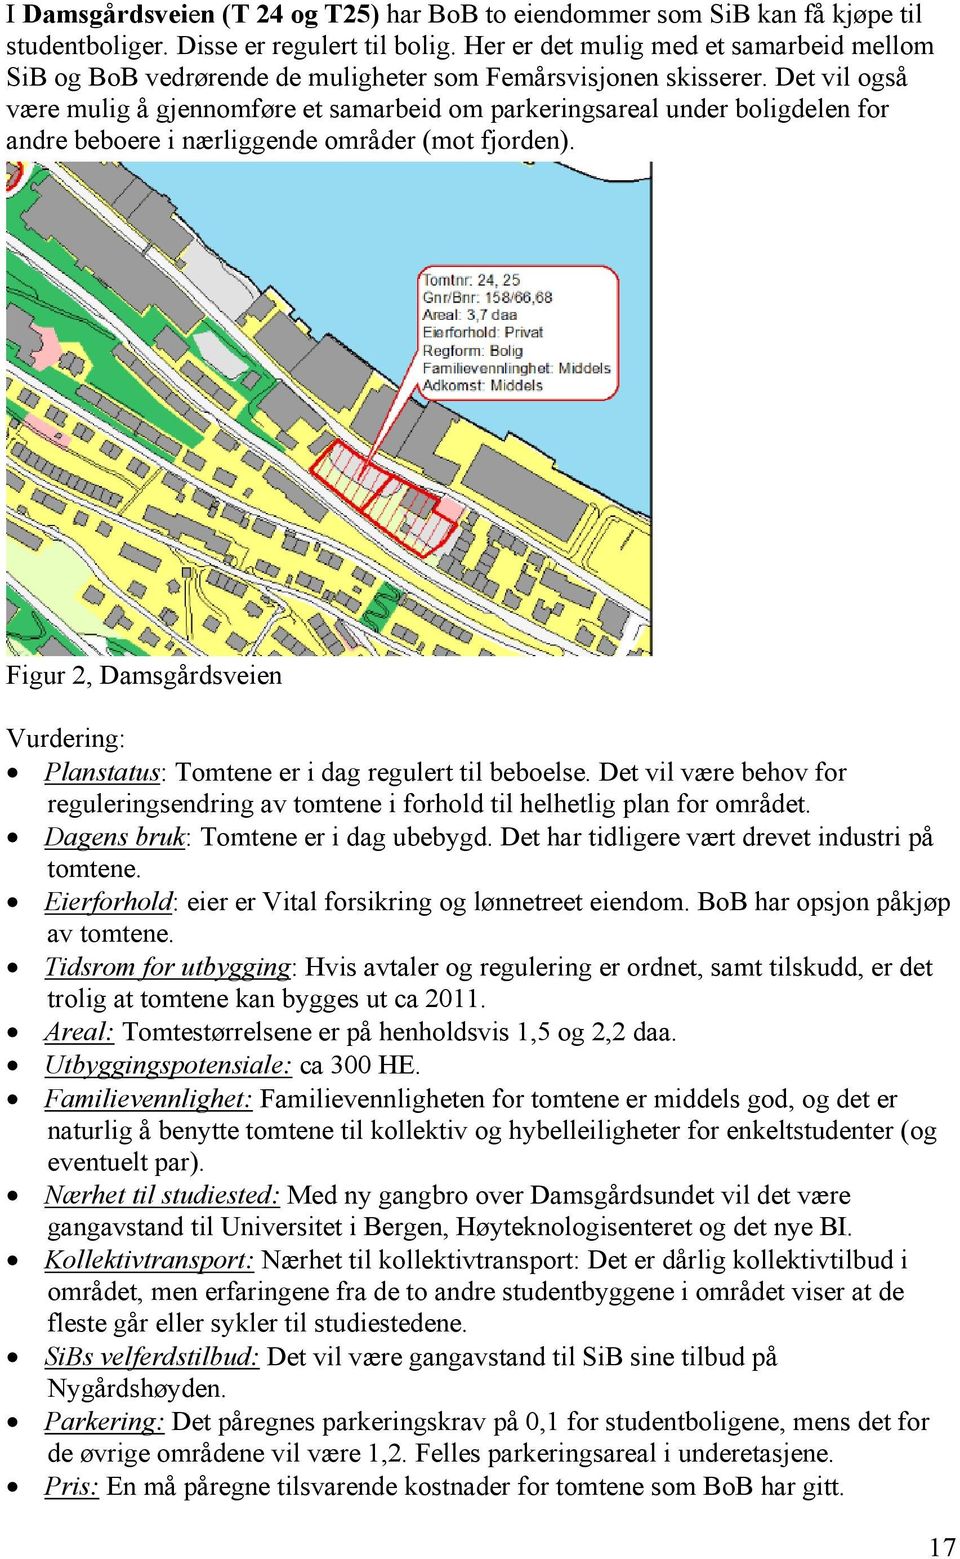 Det vil også være mulig å gjennomføre et samarbeid om parkeringsareal under boligdelen for andre beboere i nærliggende områder (mot fjorden).